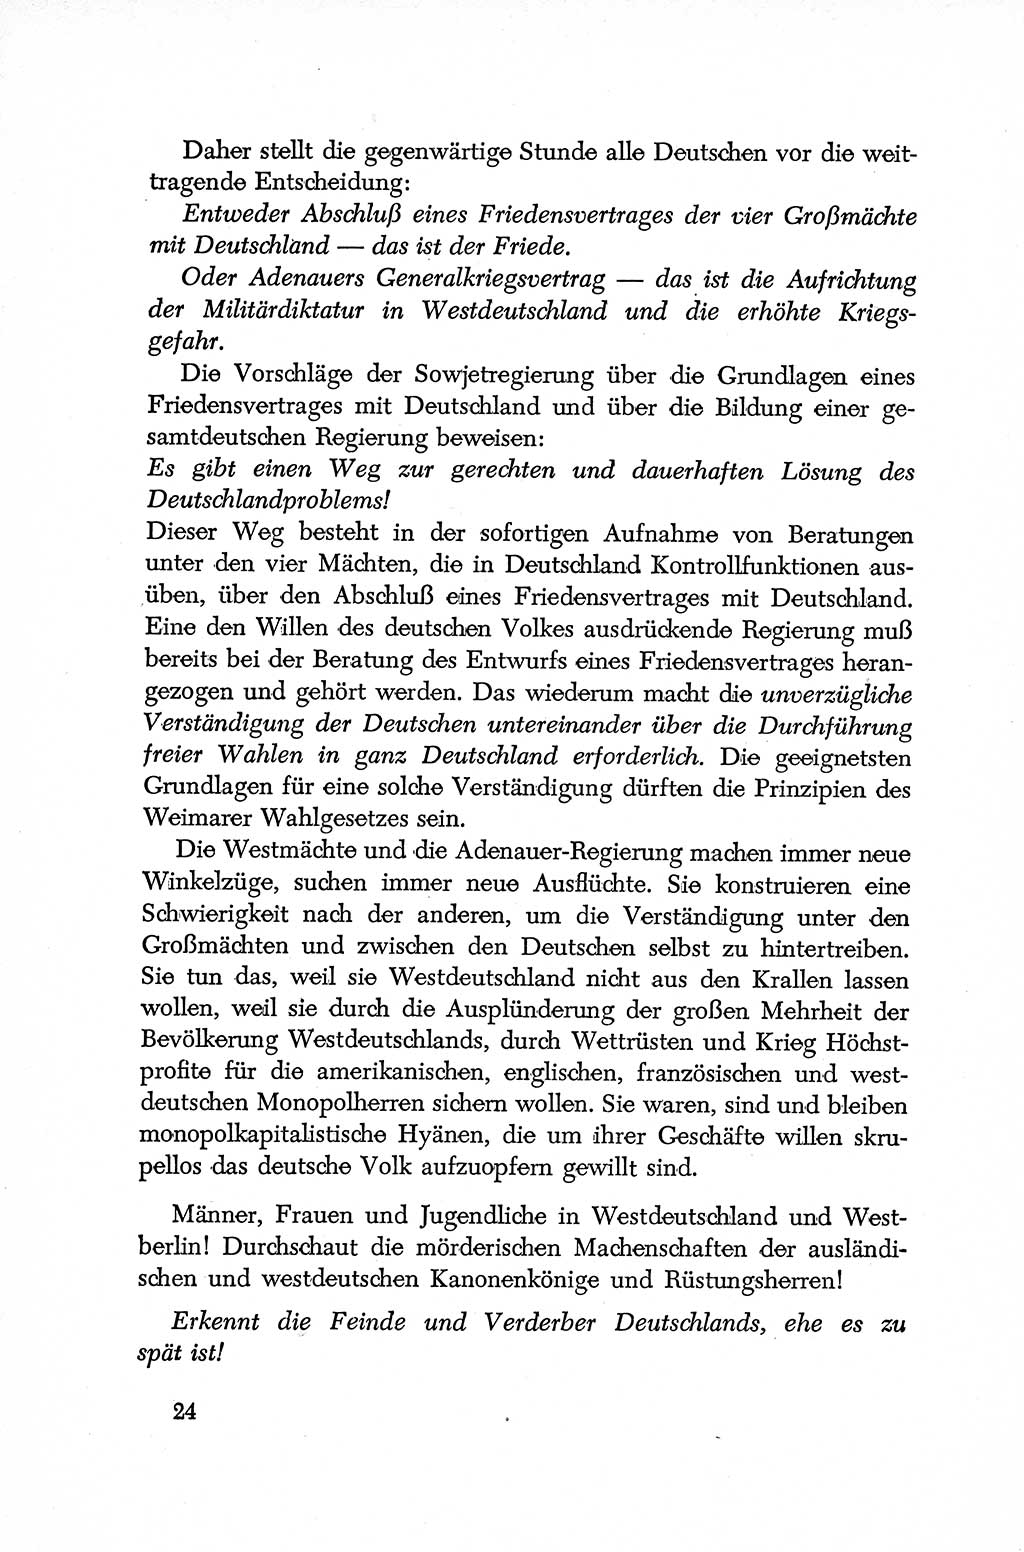 Dokumente der Sozialistischen Einheitspartei Deutschlands (SED) [Deutsche Demokratische Republik (DDR)] 1952-1953, Seite 24 (Dok. SED DDR 1952-1953, S. 24)